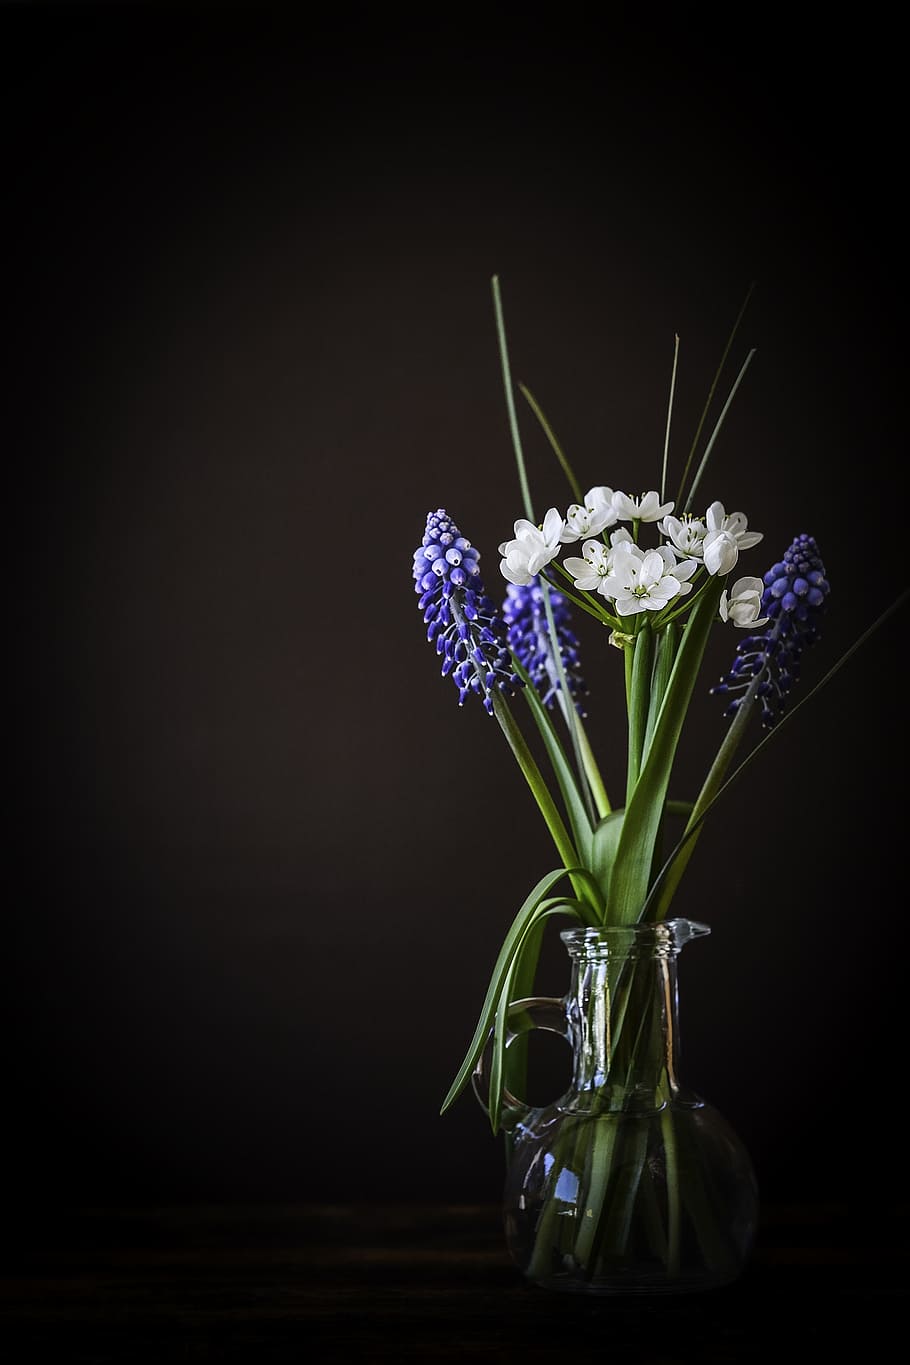 regra, terços da fotografia, branco, azul, flores, vaso de flores, vaso, vidro, jacinto de uva, flor de alho-porro